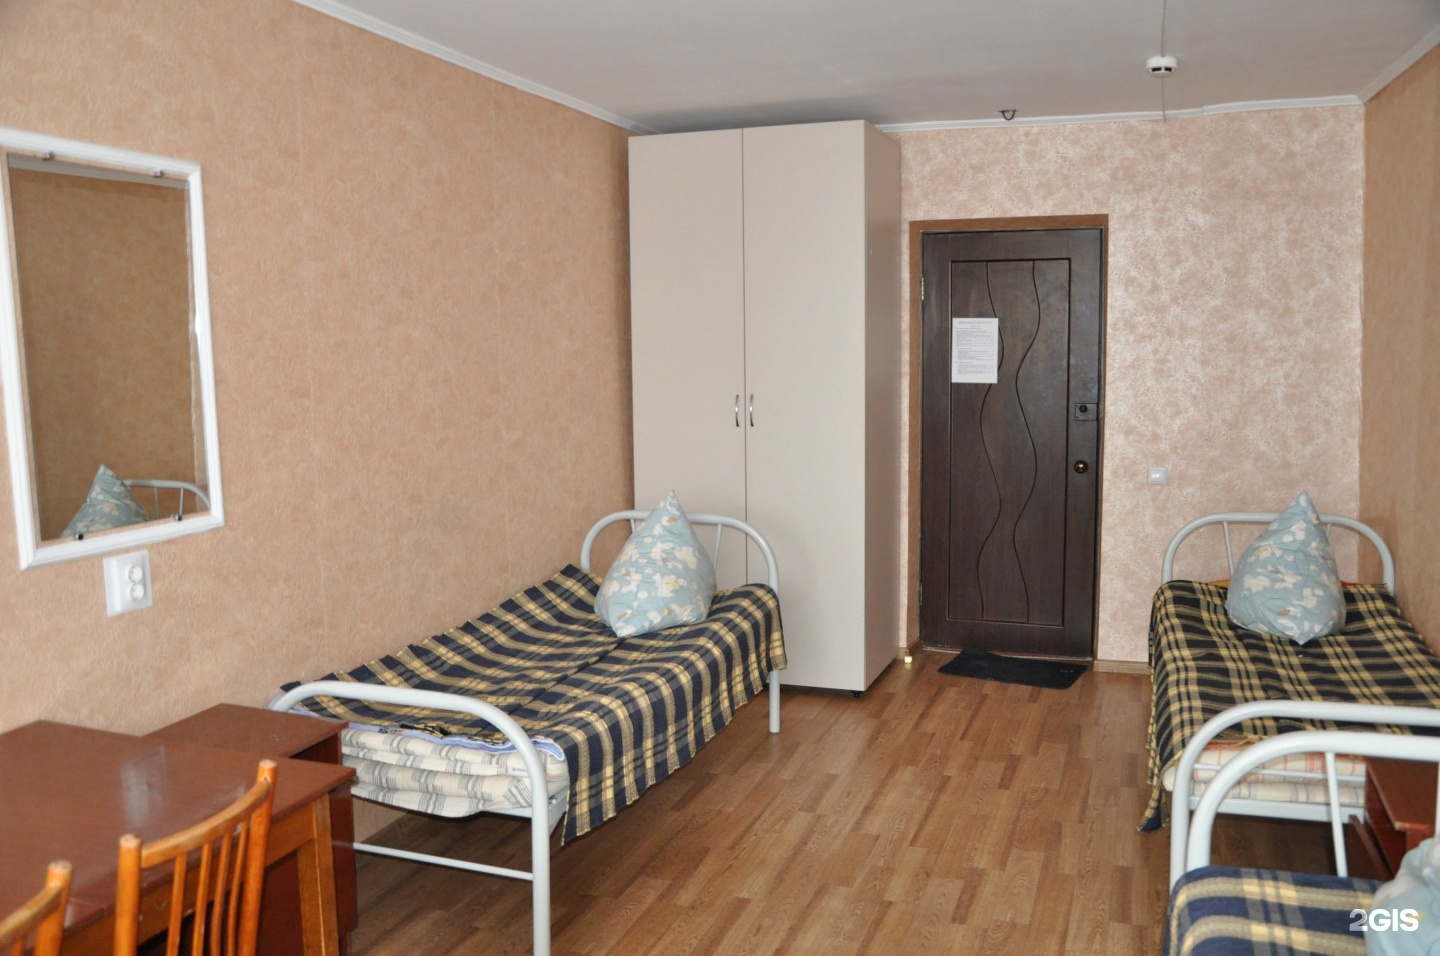 Блочная комната в общежитии. Общежитие 4 СИБУПК Новосибирск. Общага гостиничного типа. Комната в общежитии гостиничного типа.